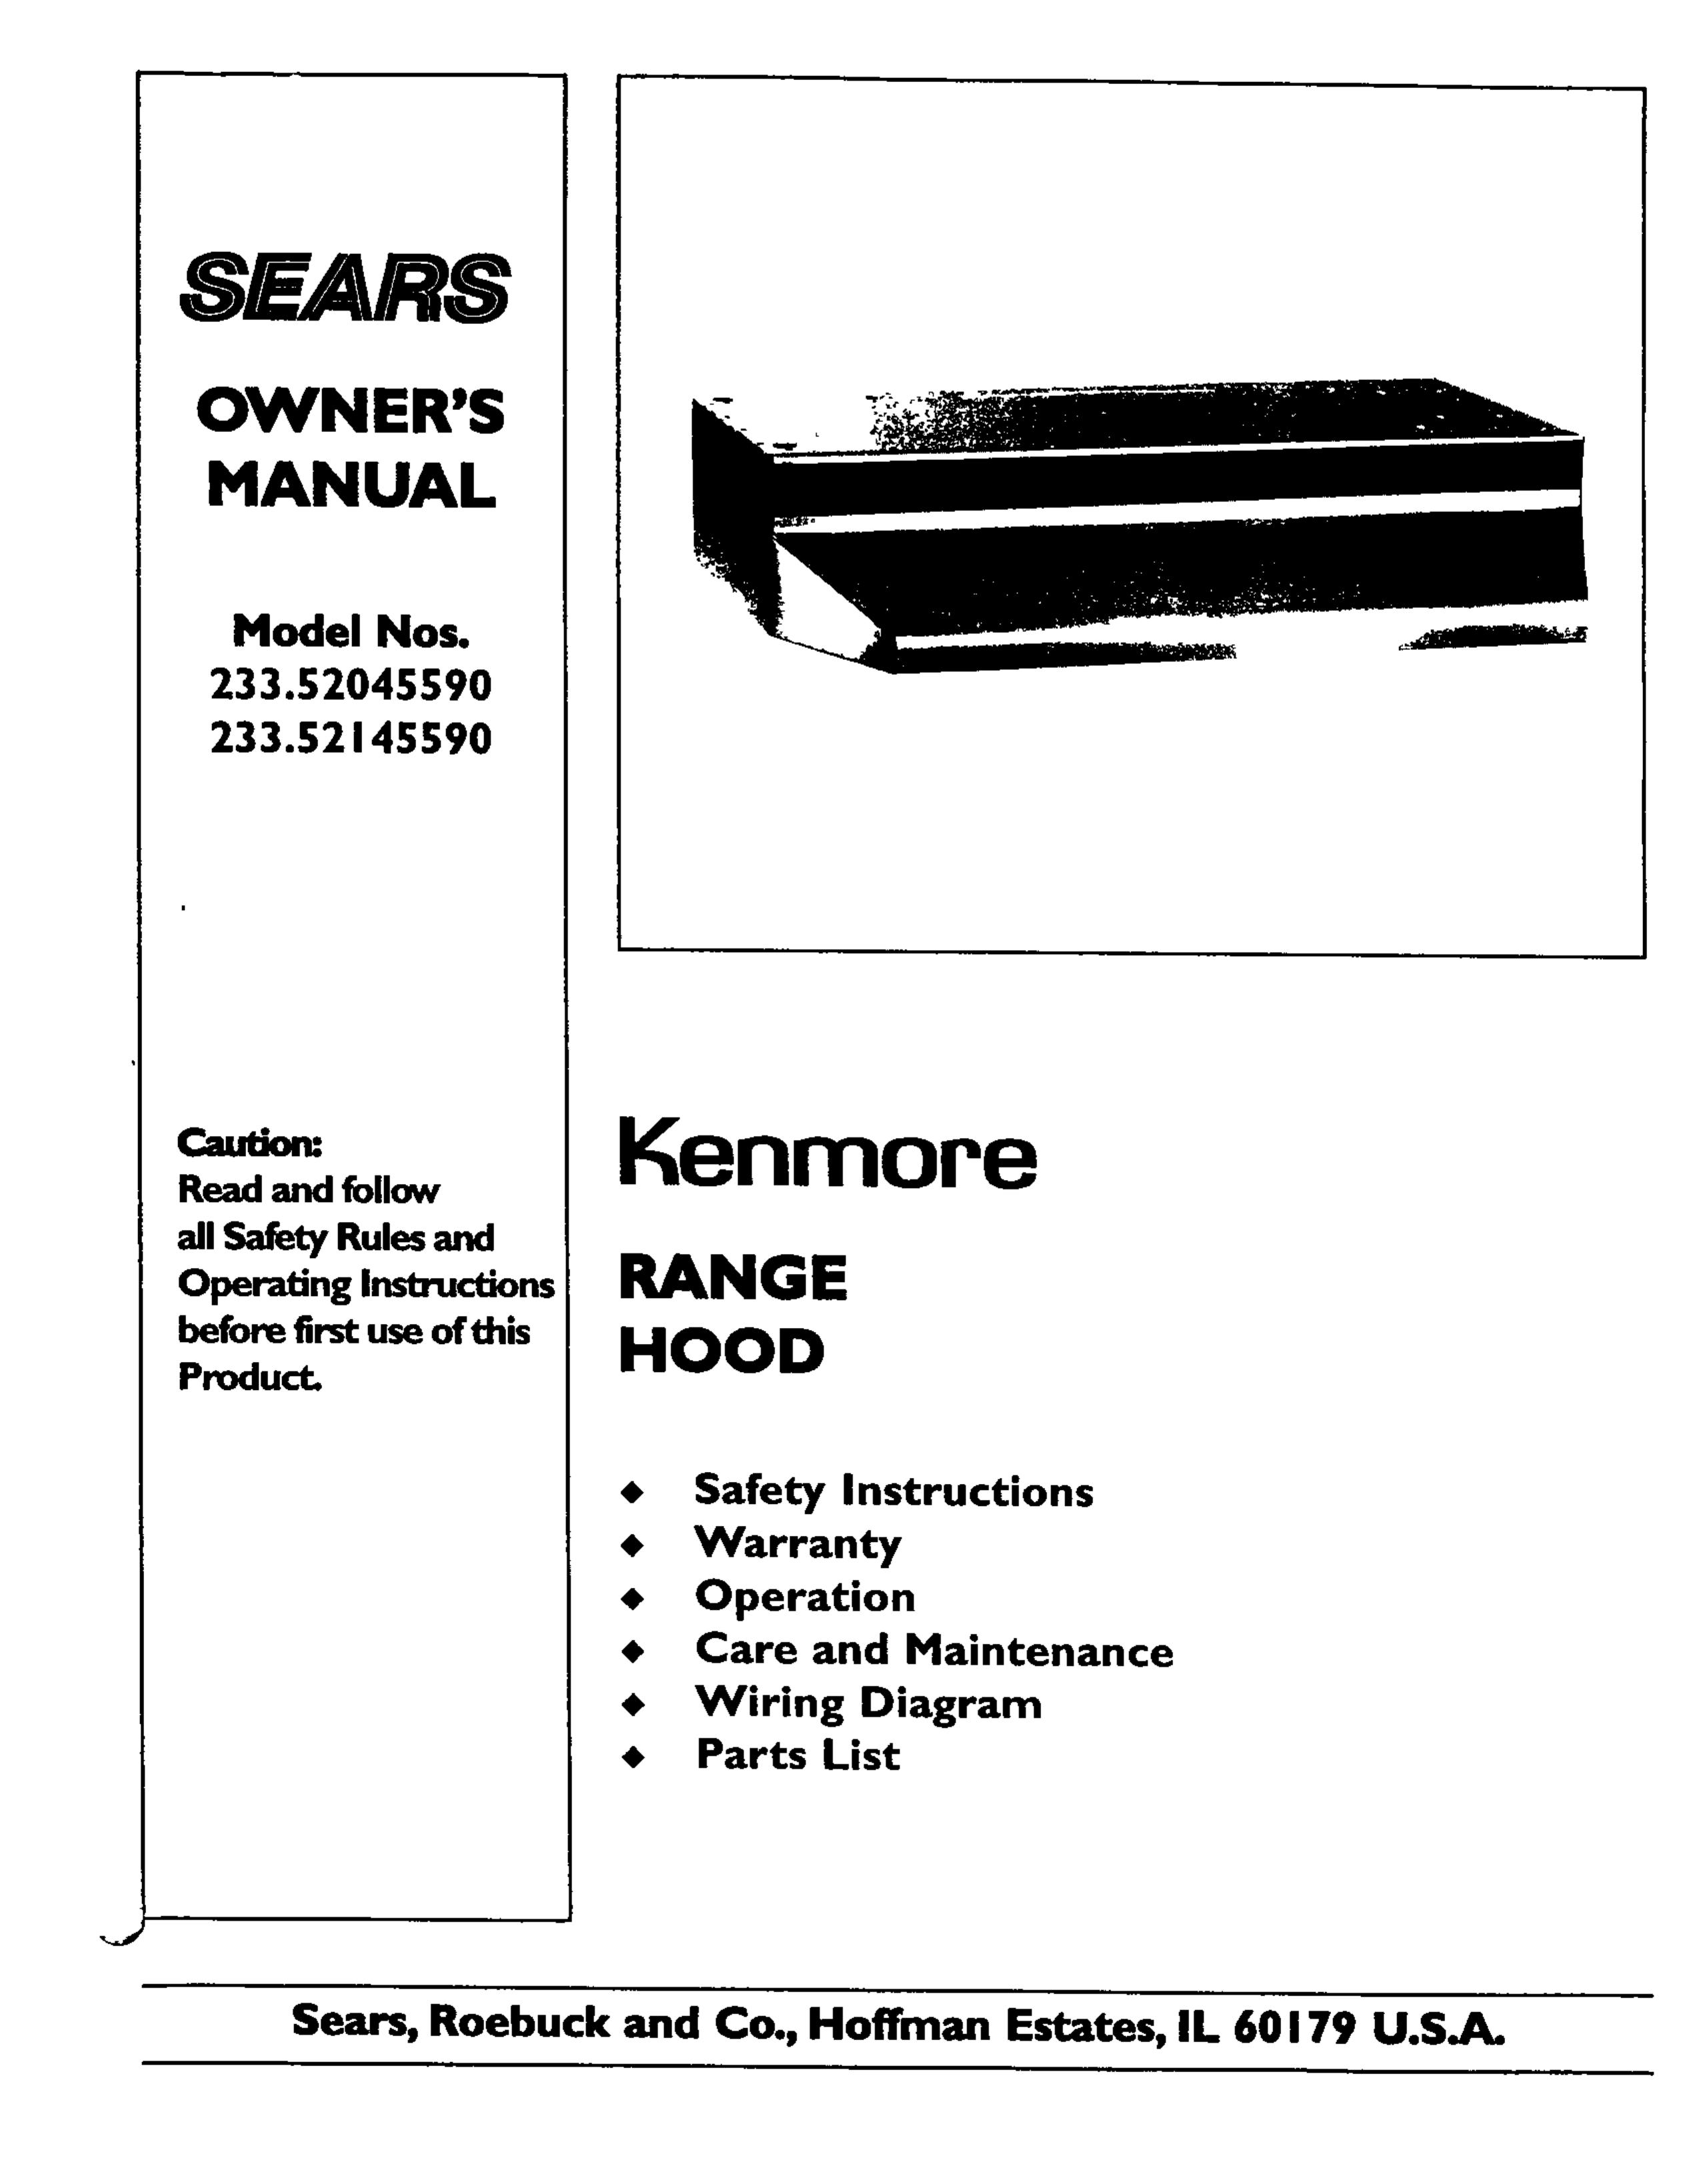 Kenmore 233.5214559 Blower User Manual